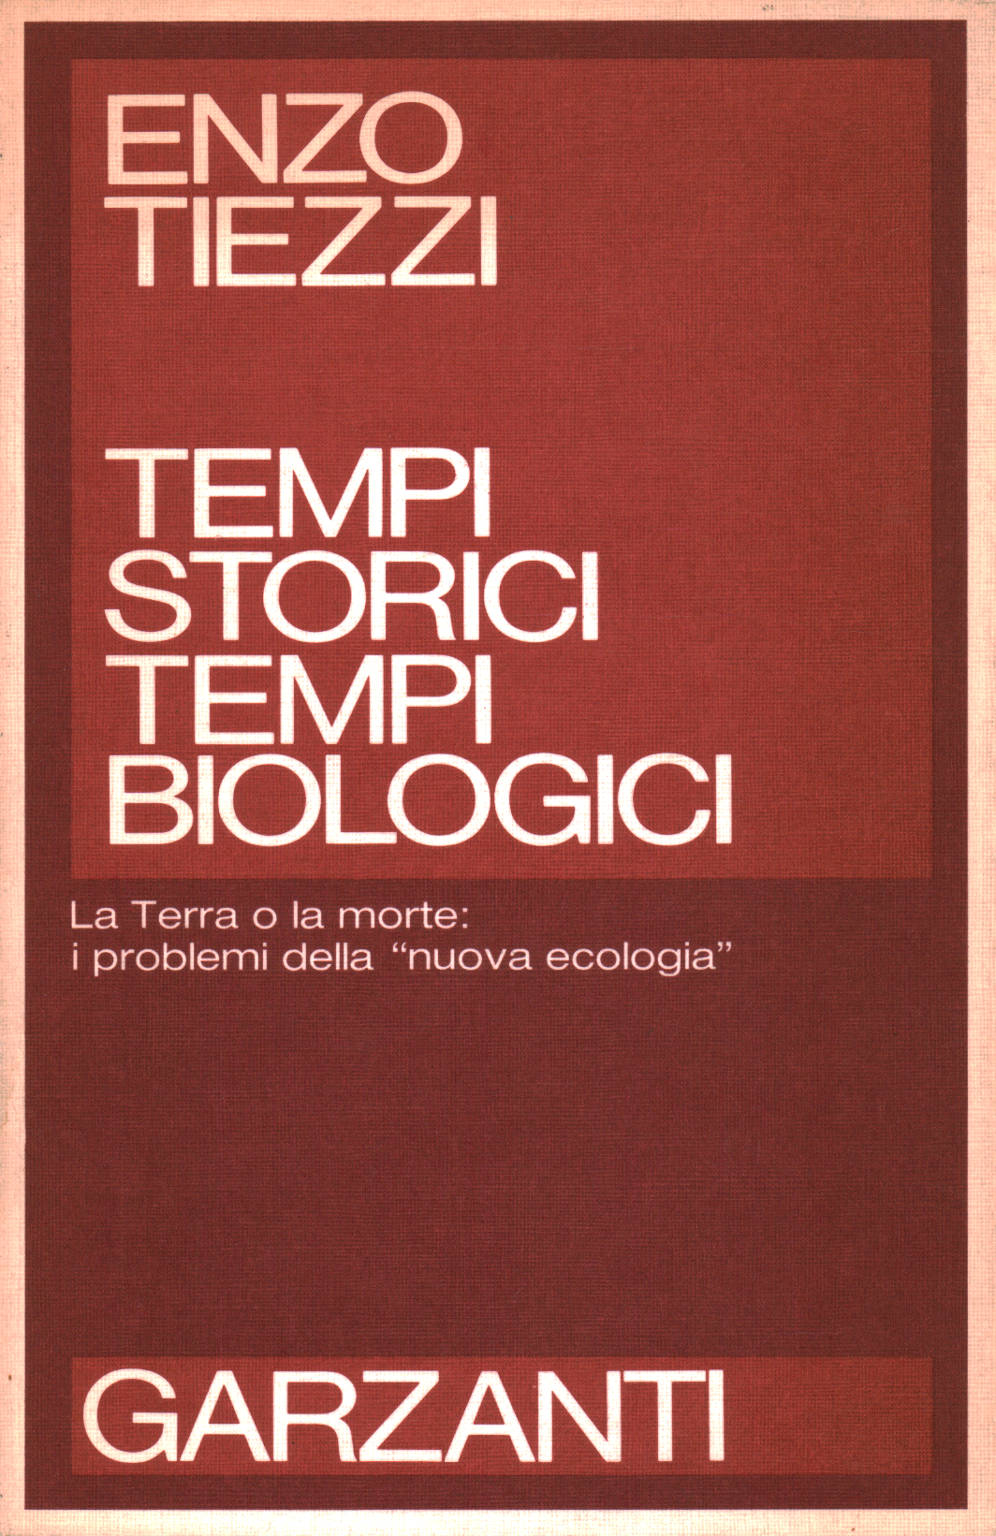 Zeit, historische zeit, biologische, Enzo Tiezzi